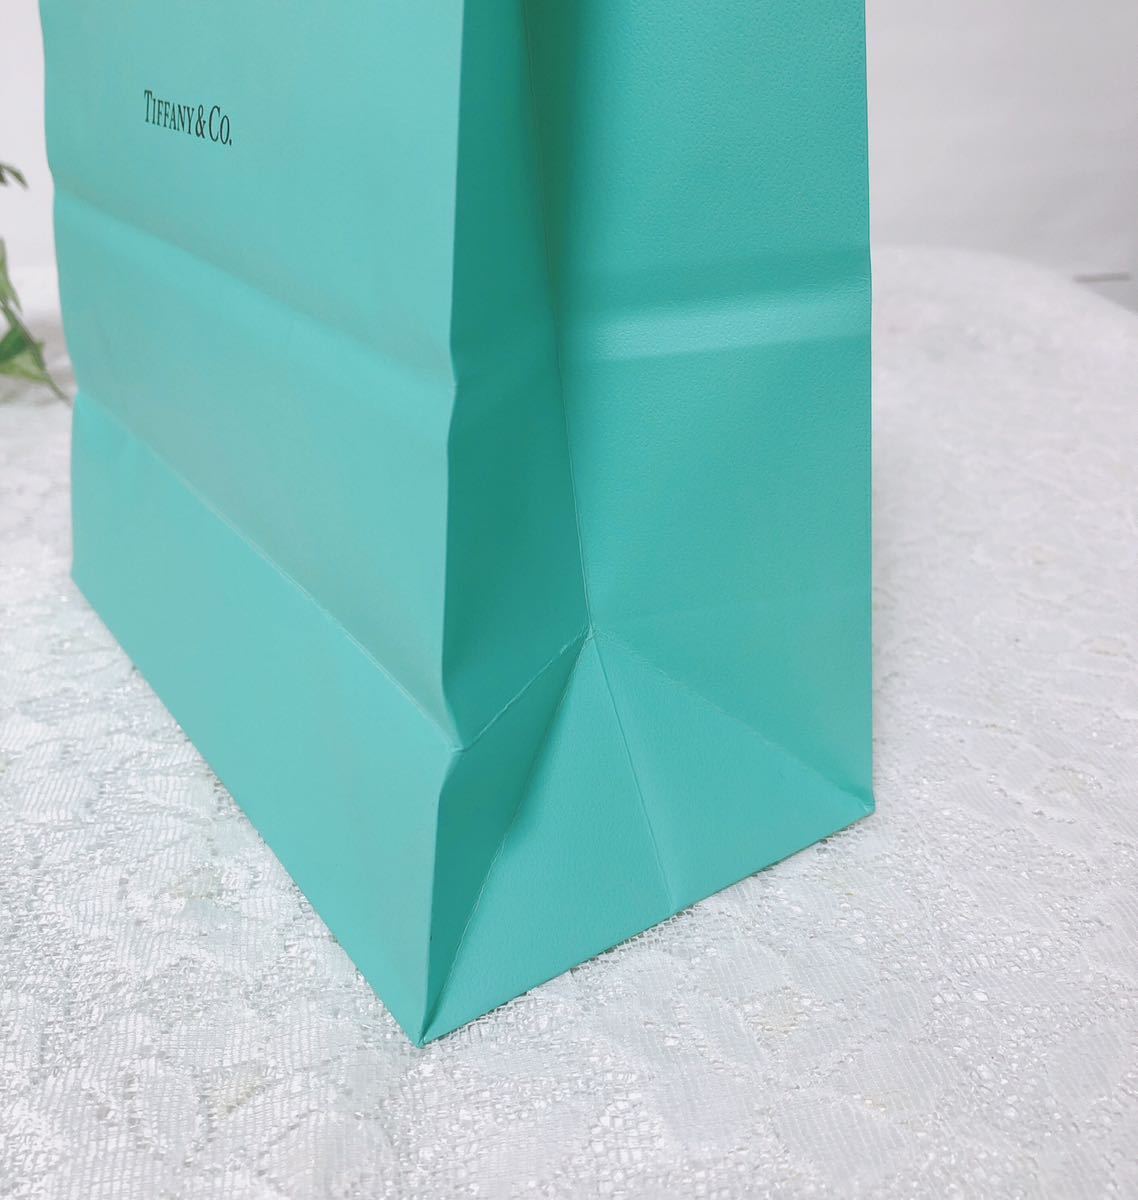 ティファニー「TIFFANY&Co.」ショッパー 小物箱サイズ (3044) 正規品 付属品 ショップ袋 ブランド紙袋 封筒付き 折らずに配送の画像8